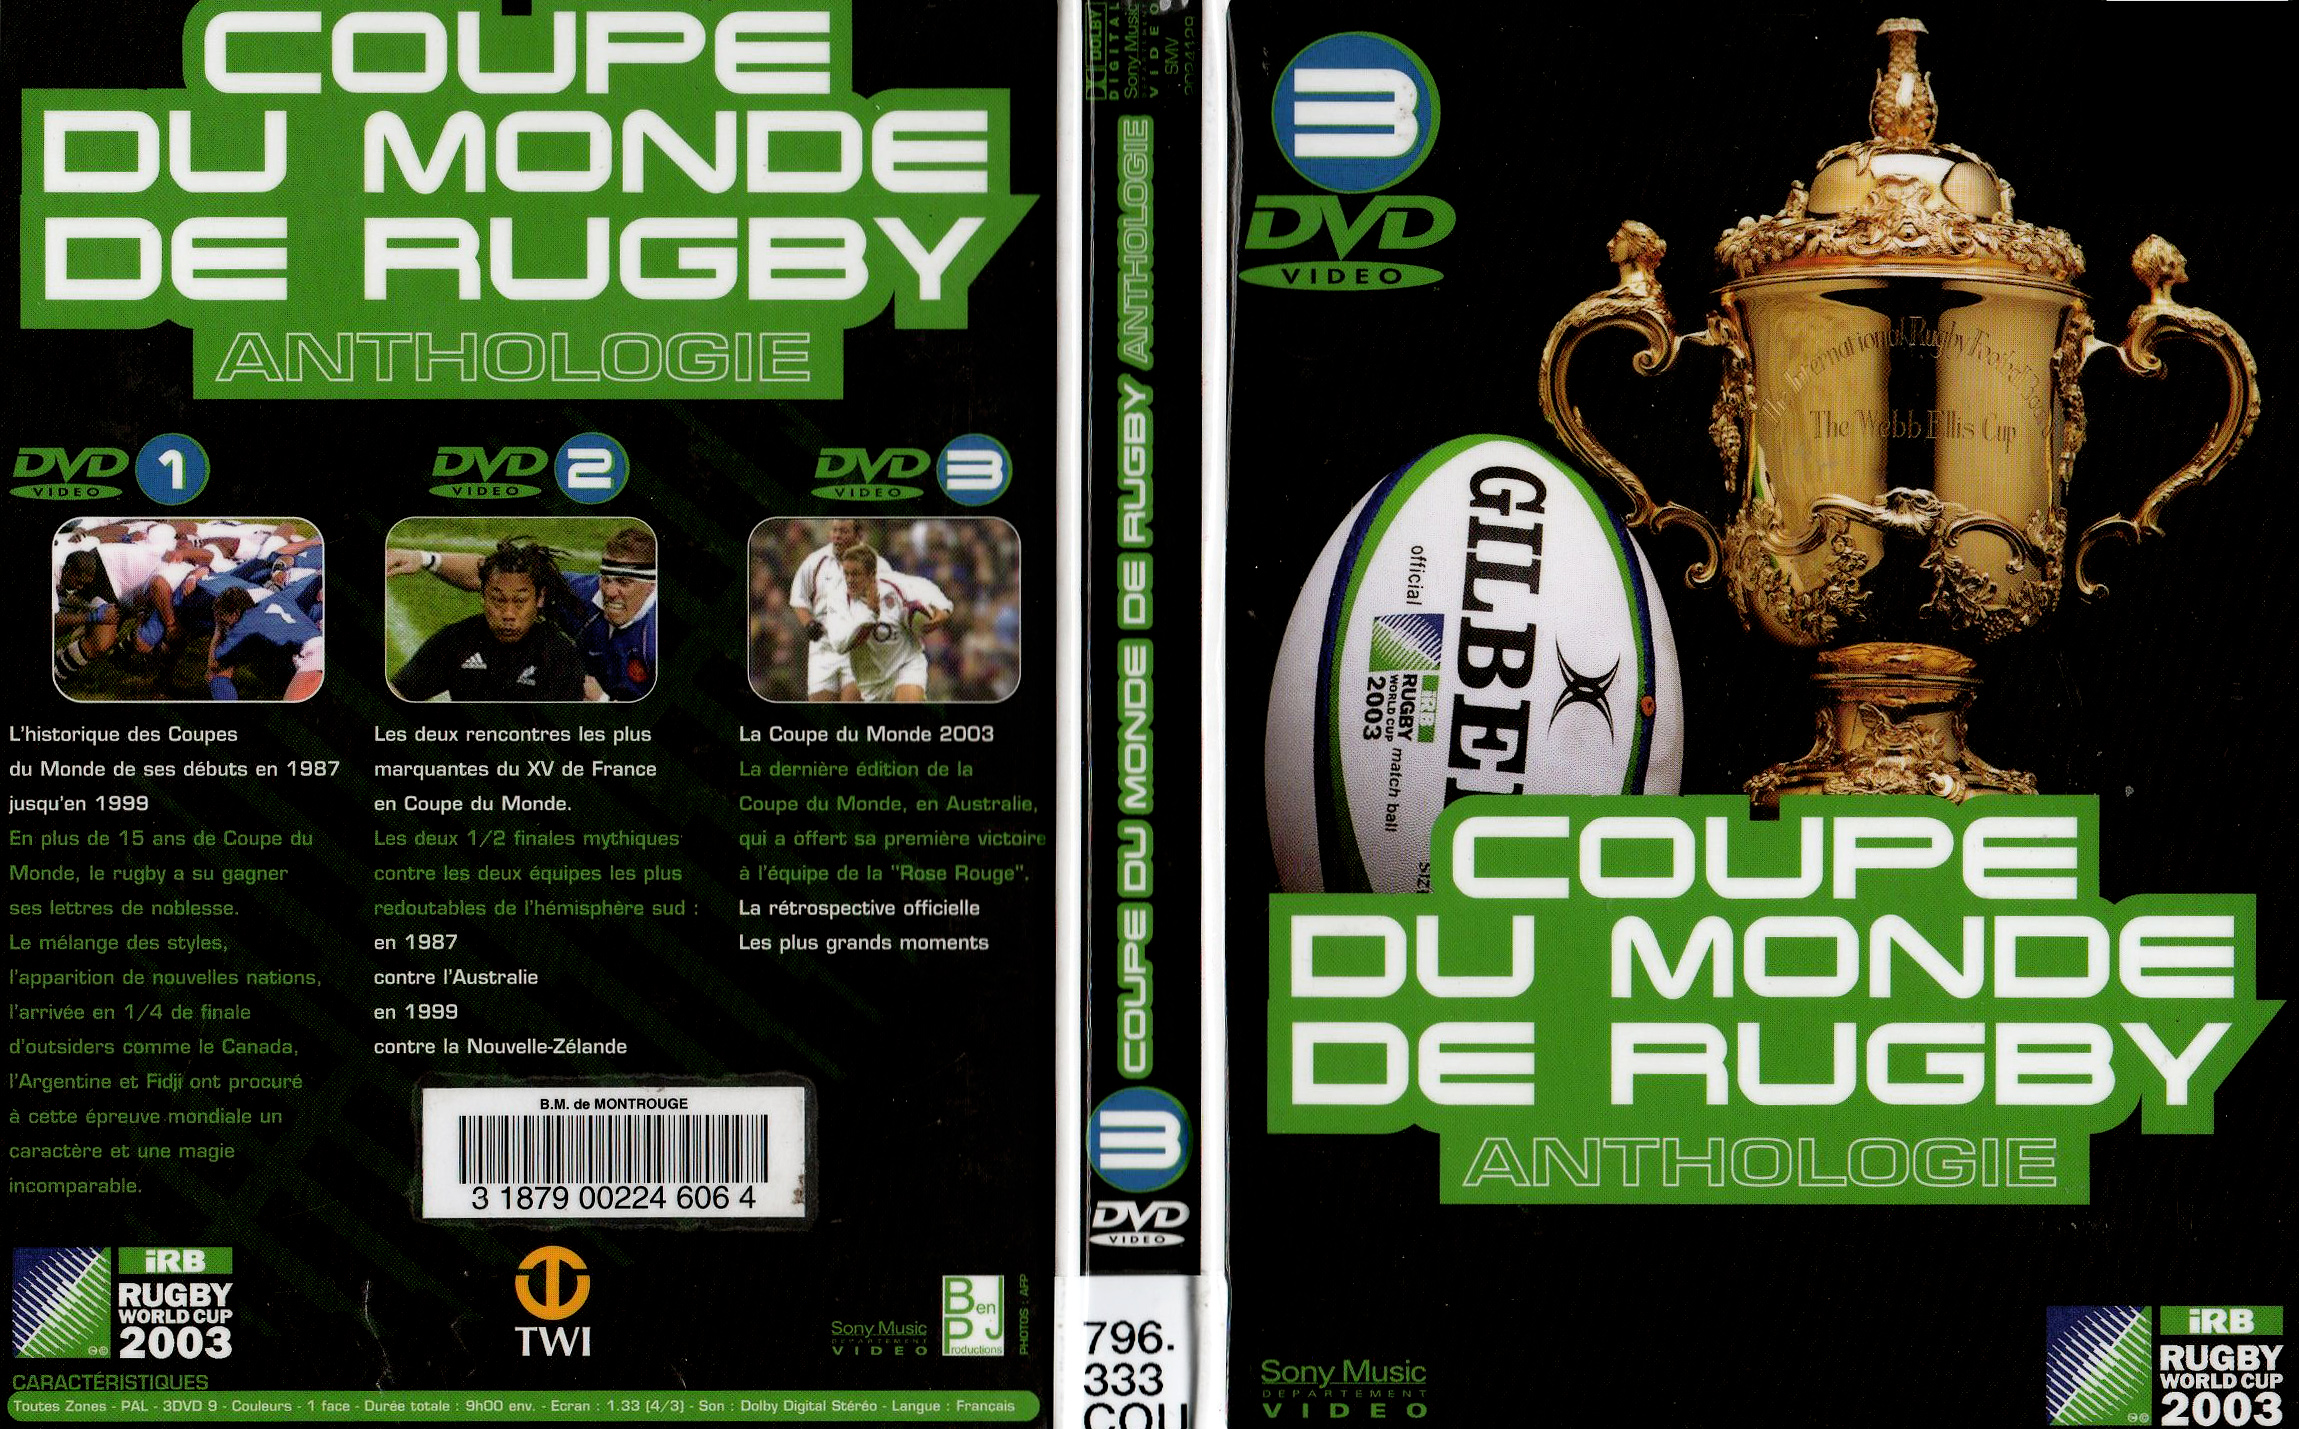 Jaquette DVD Coupe du monde de Rugby Anthologie